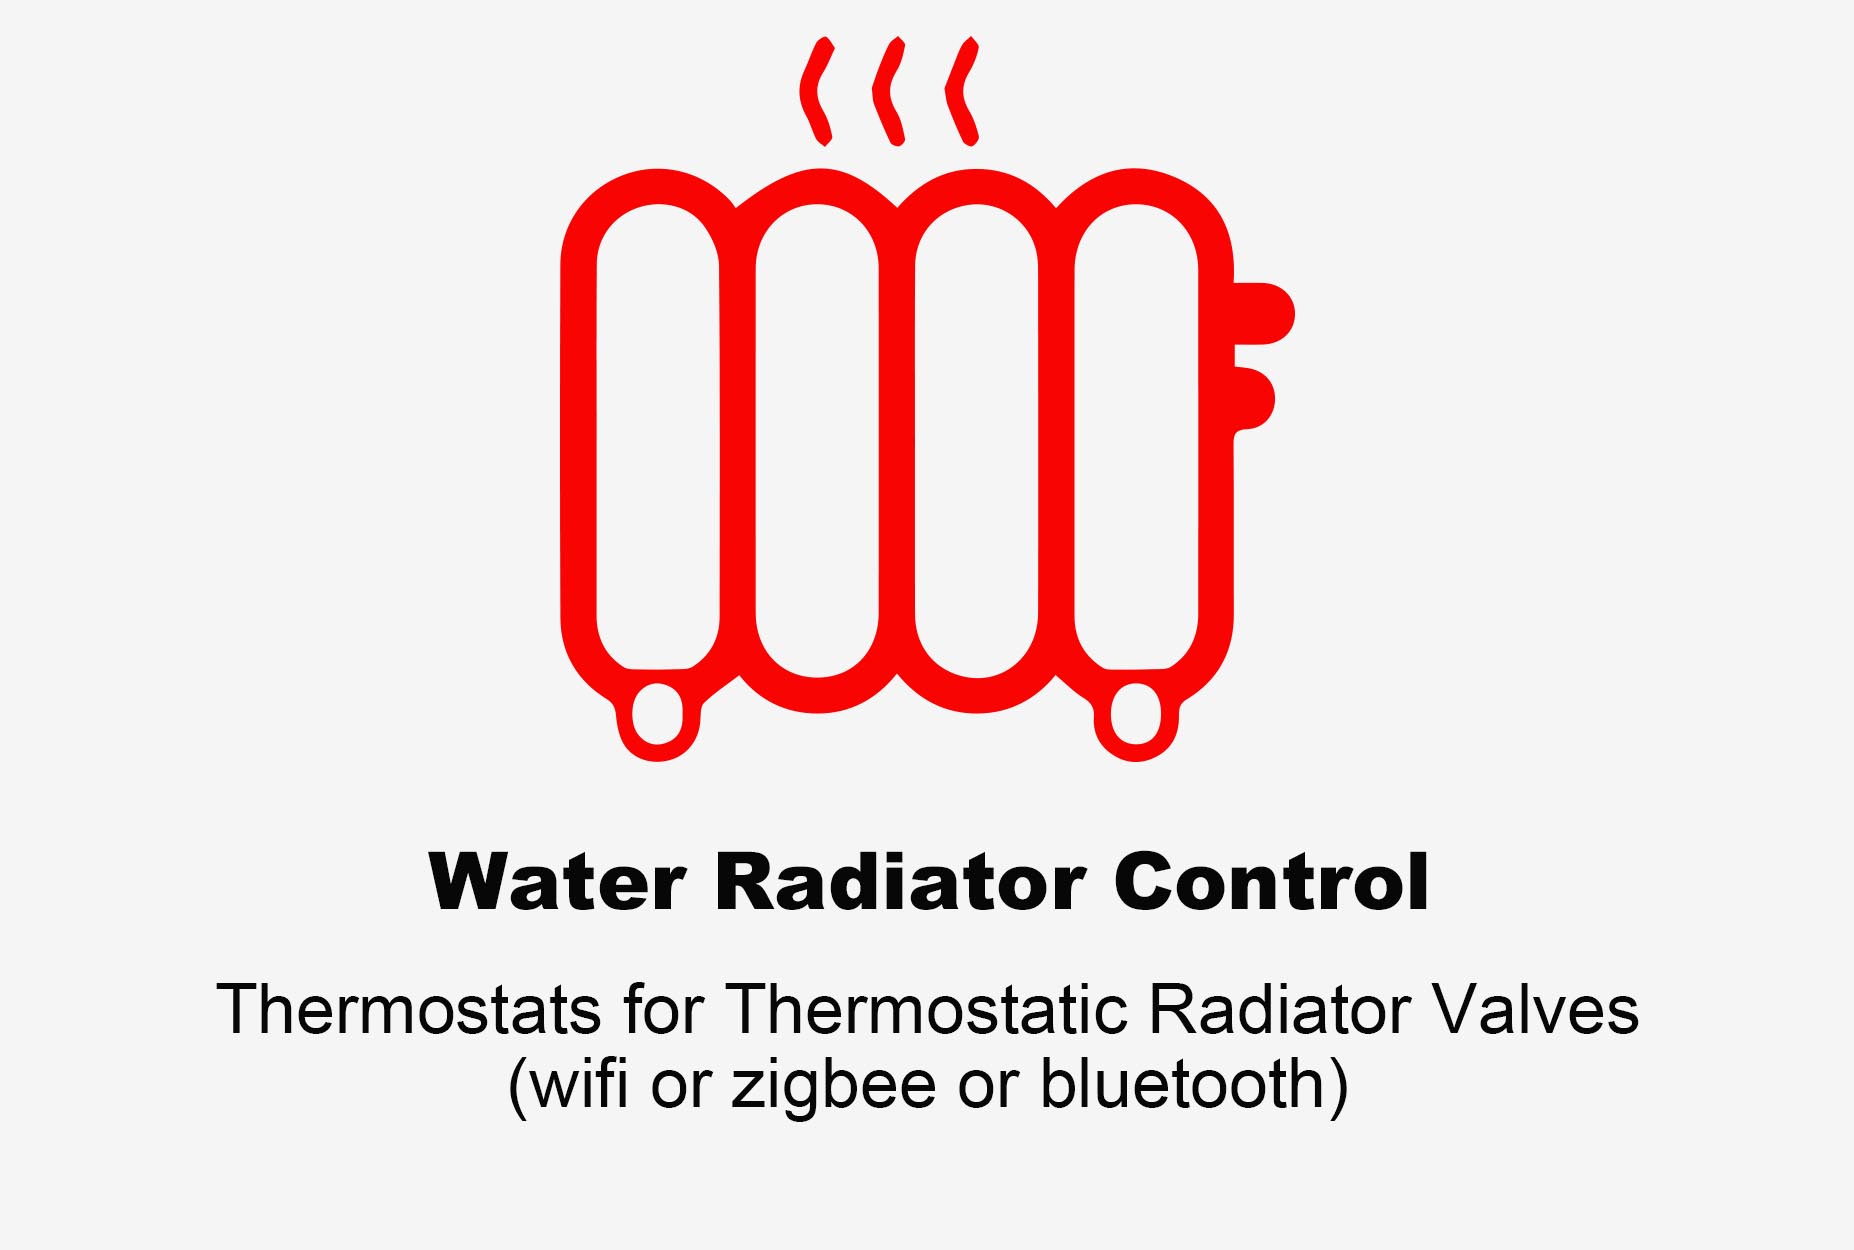 Термостат водяного радиатора, термостат Bluetooth, термостат радиатора Zigbee, термостат радиатора Wi-Fi